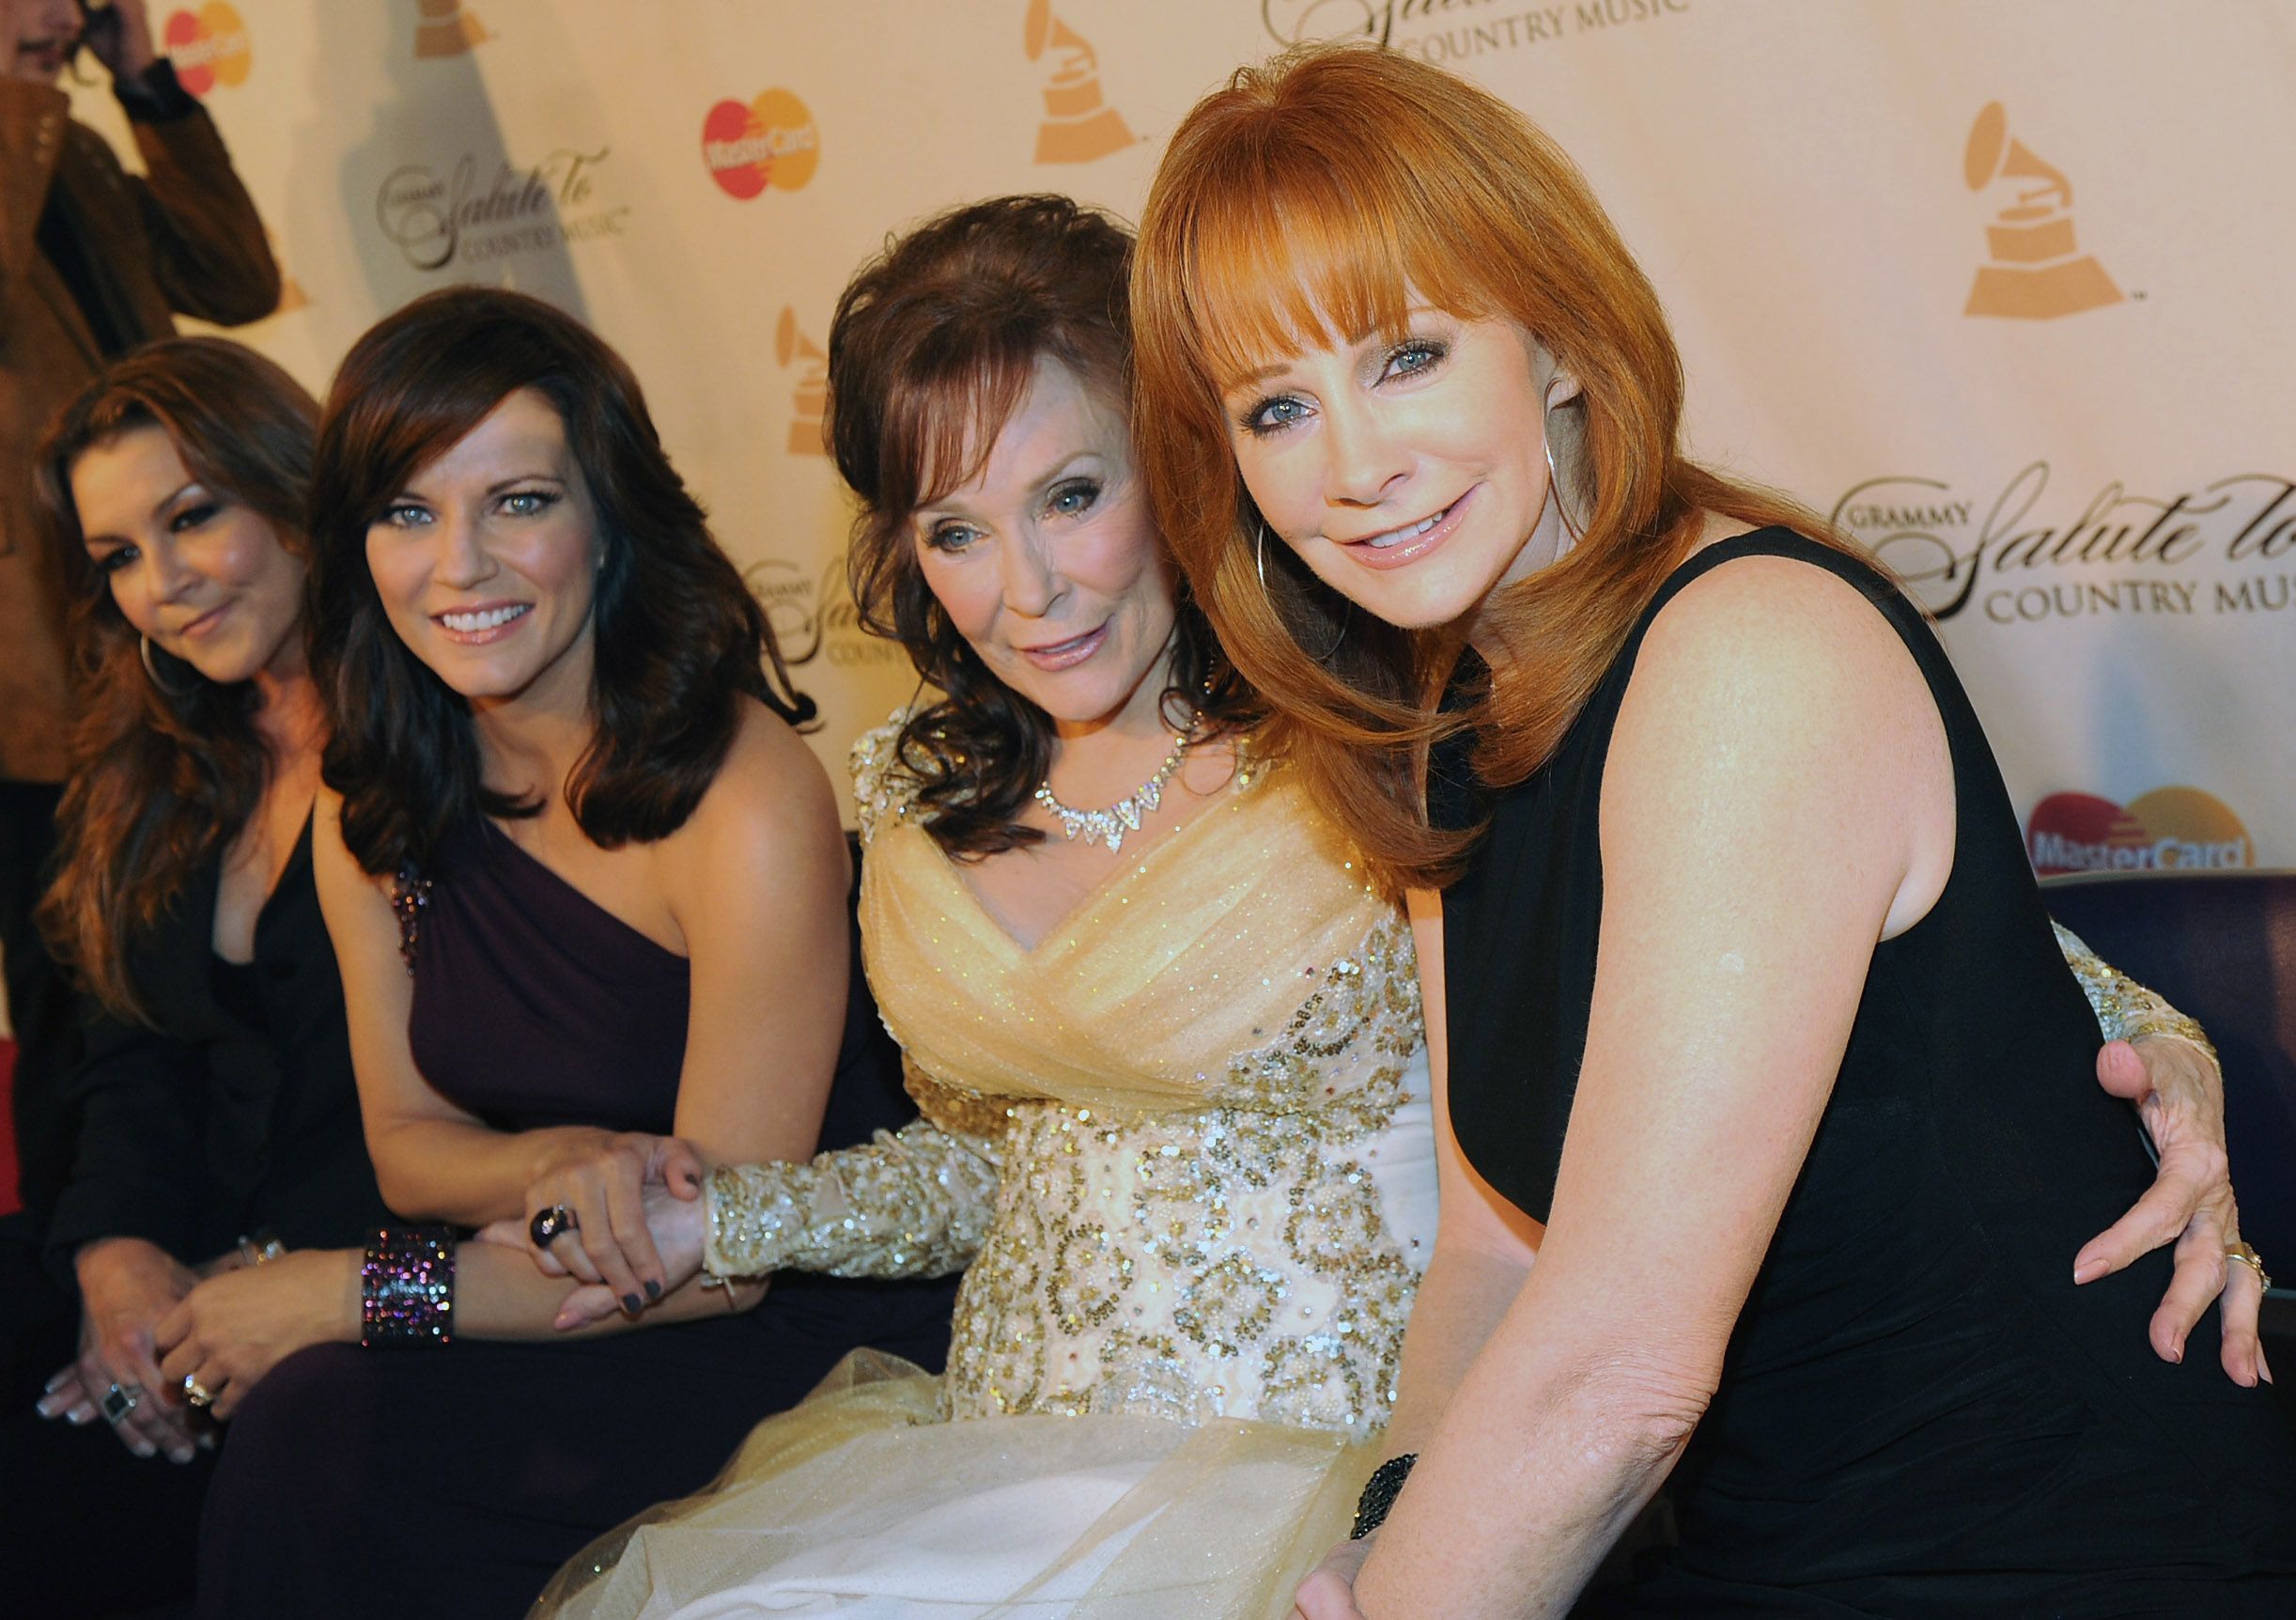 Loretta Lynn seated with Gretchen Wilson, Martina McBride and Reba McEntire.